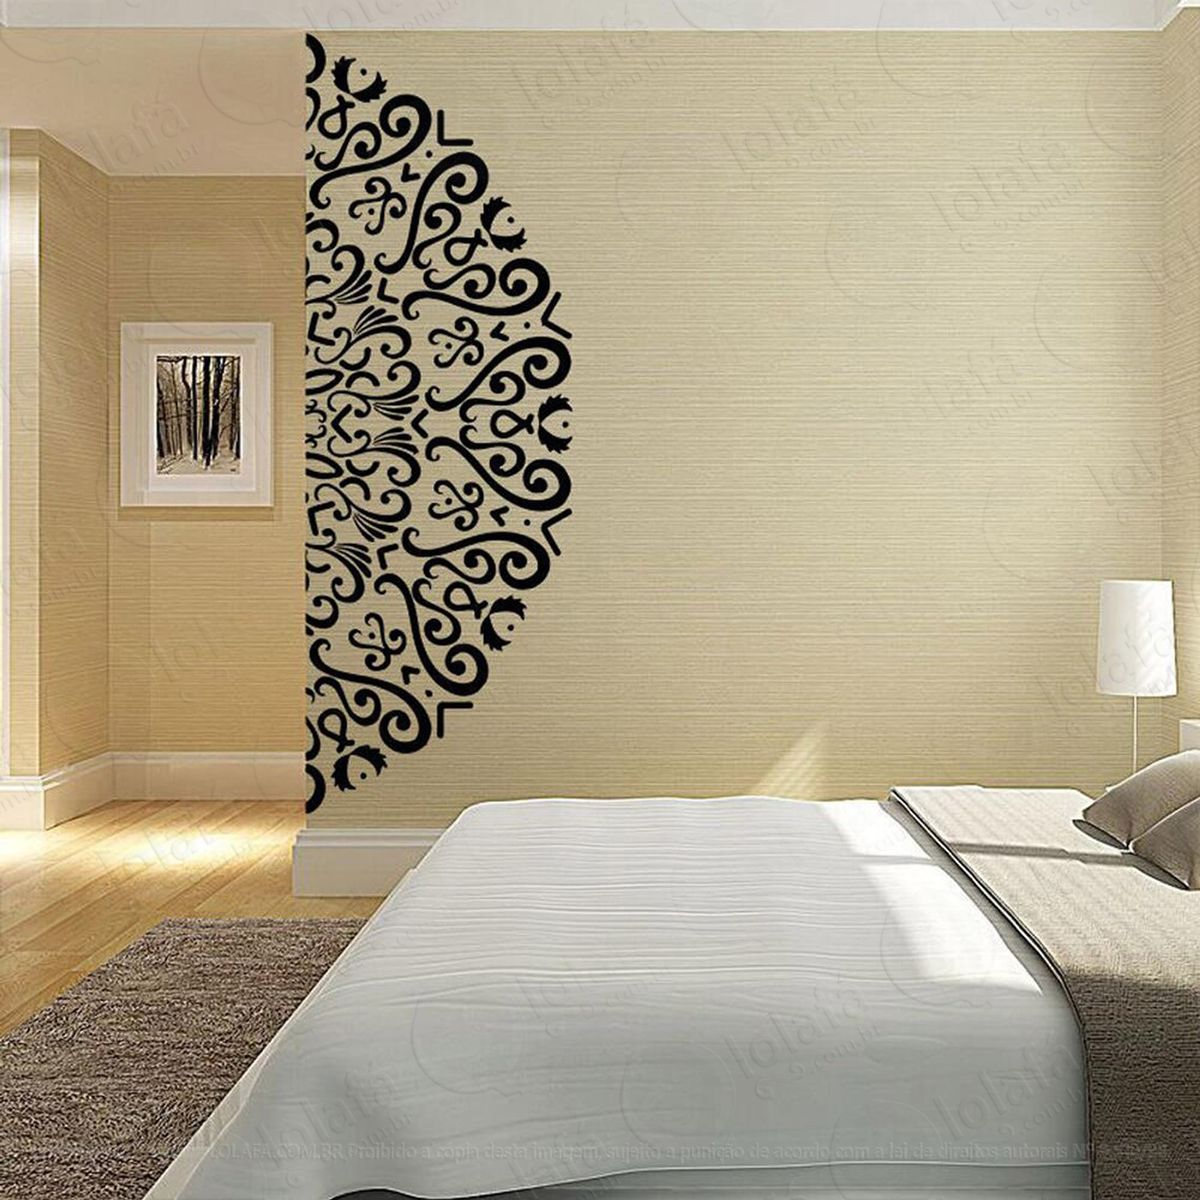 mandala para recomeçar com sabedoria adesivo de parede decorativo para casa, quarto, sala e vidro - mod:469